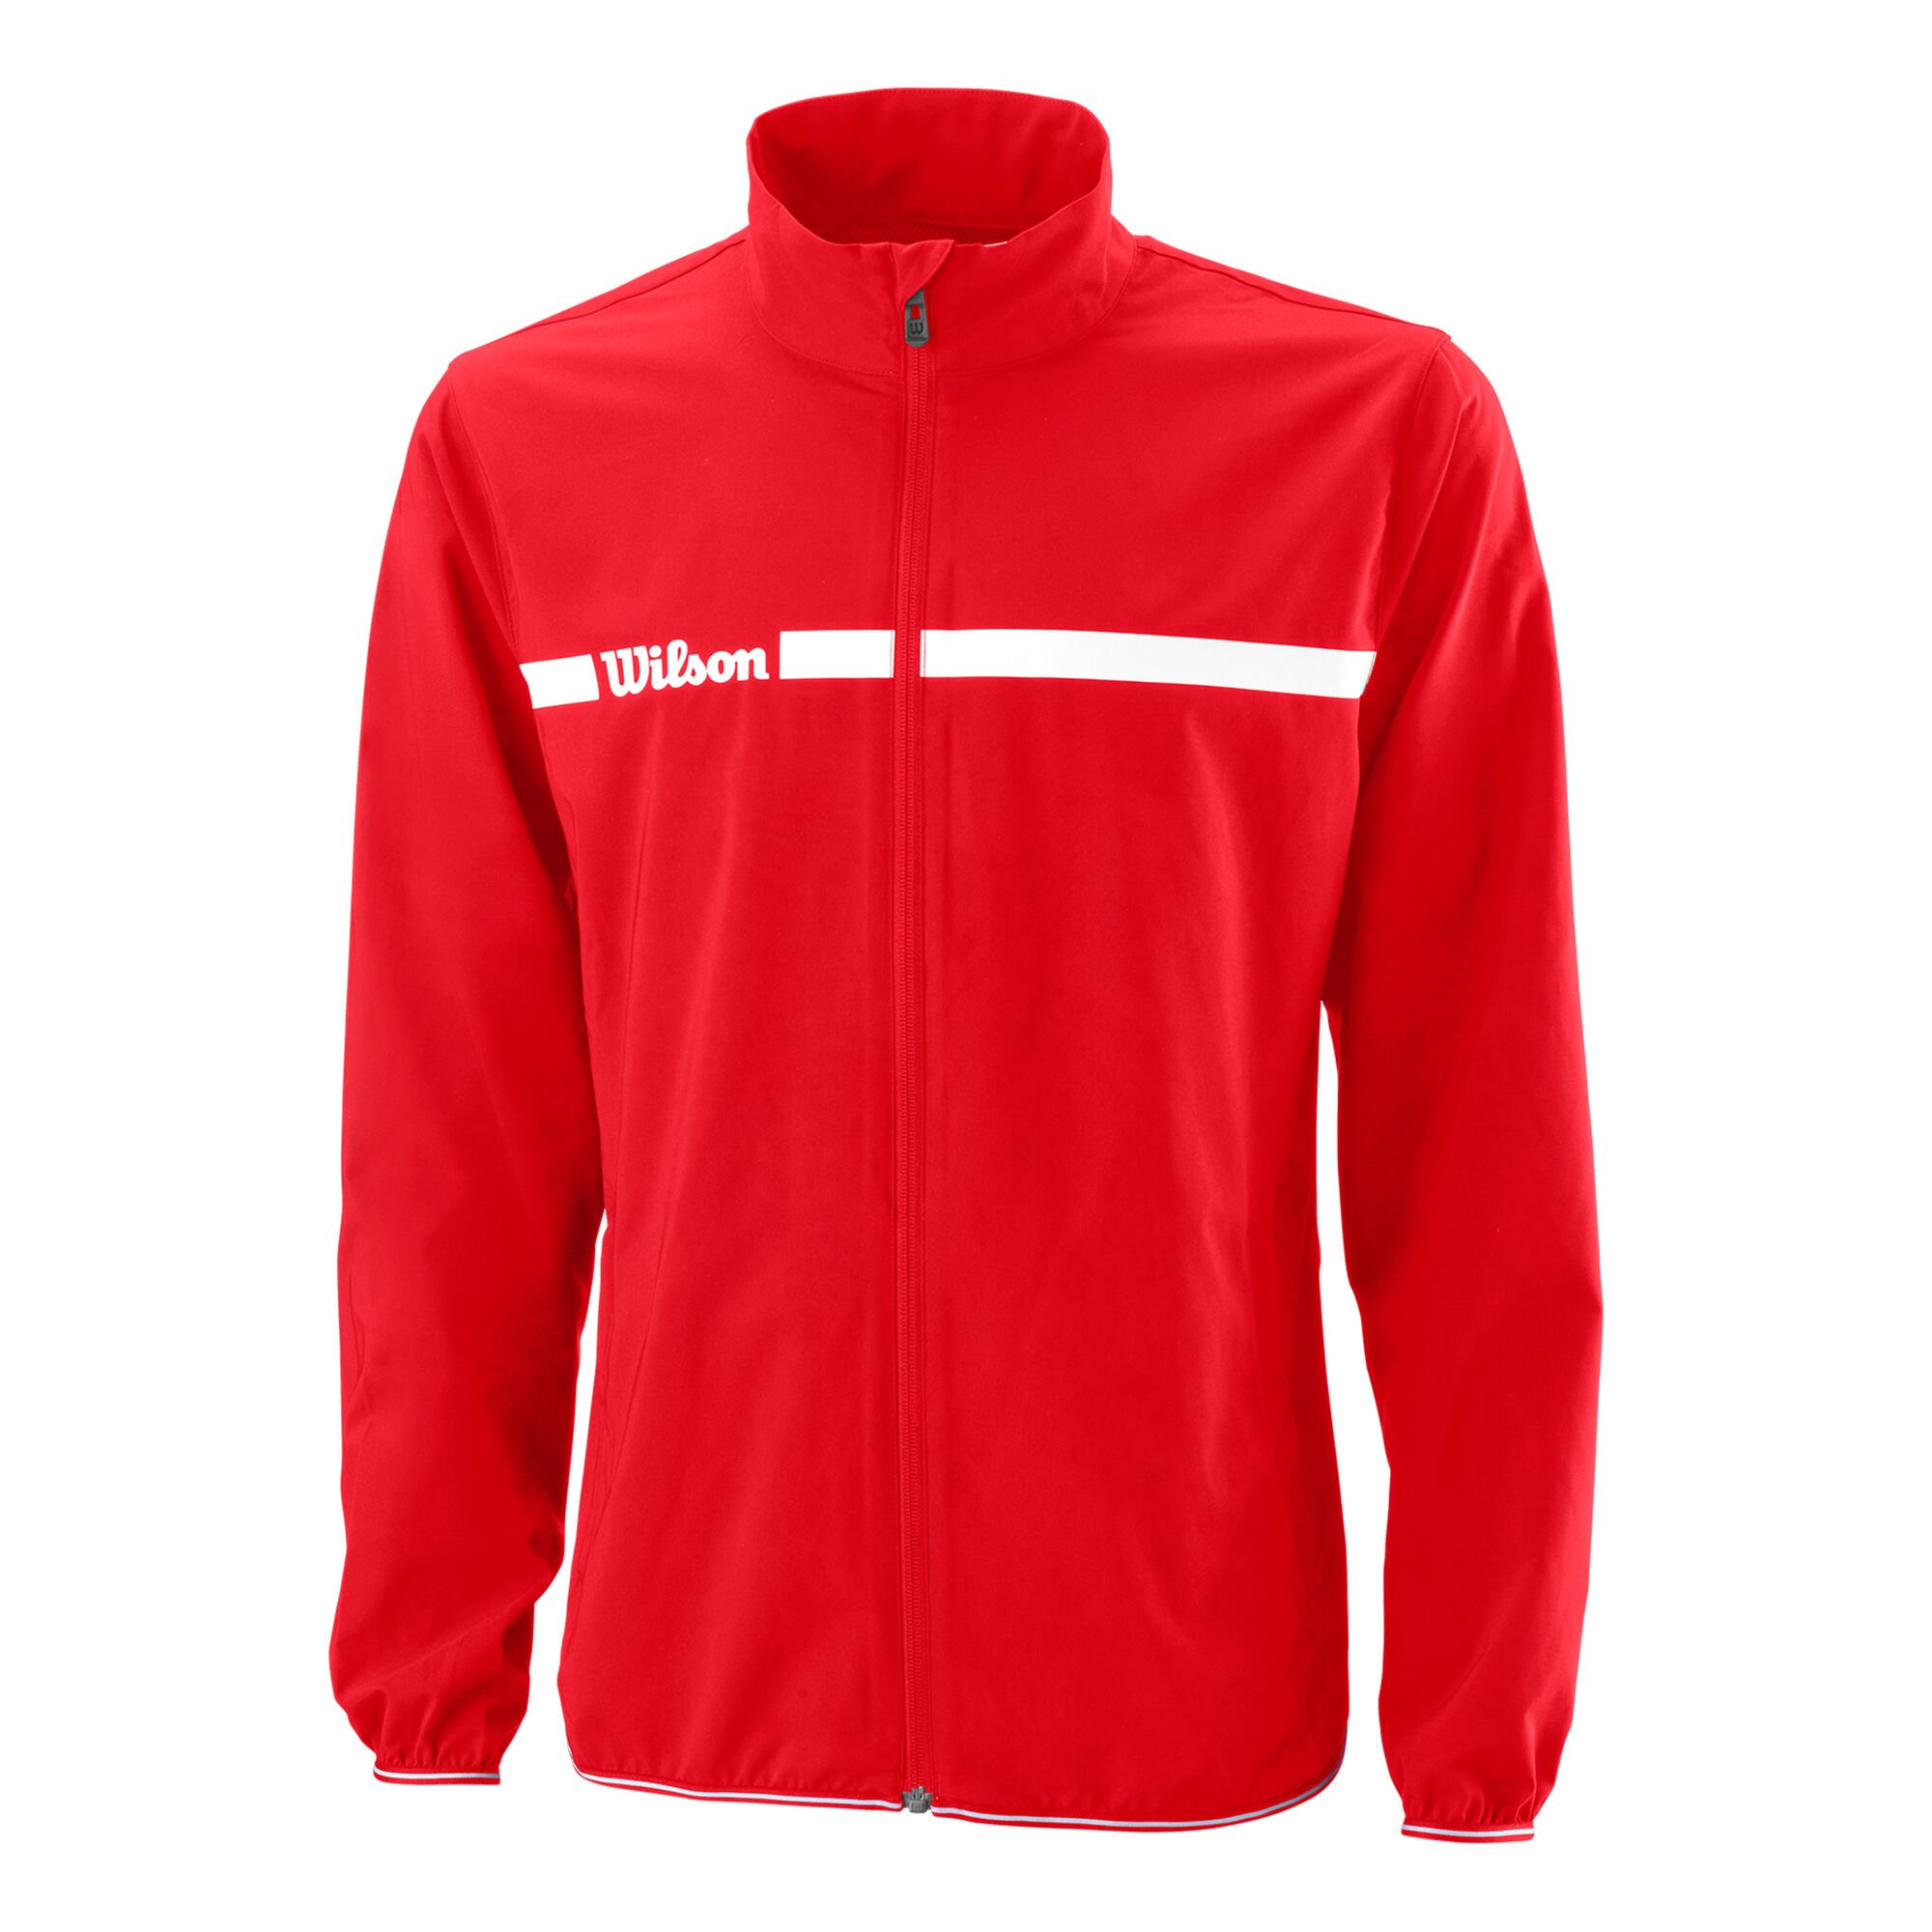 Buy Wilson Training Jacket Men Red, White online